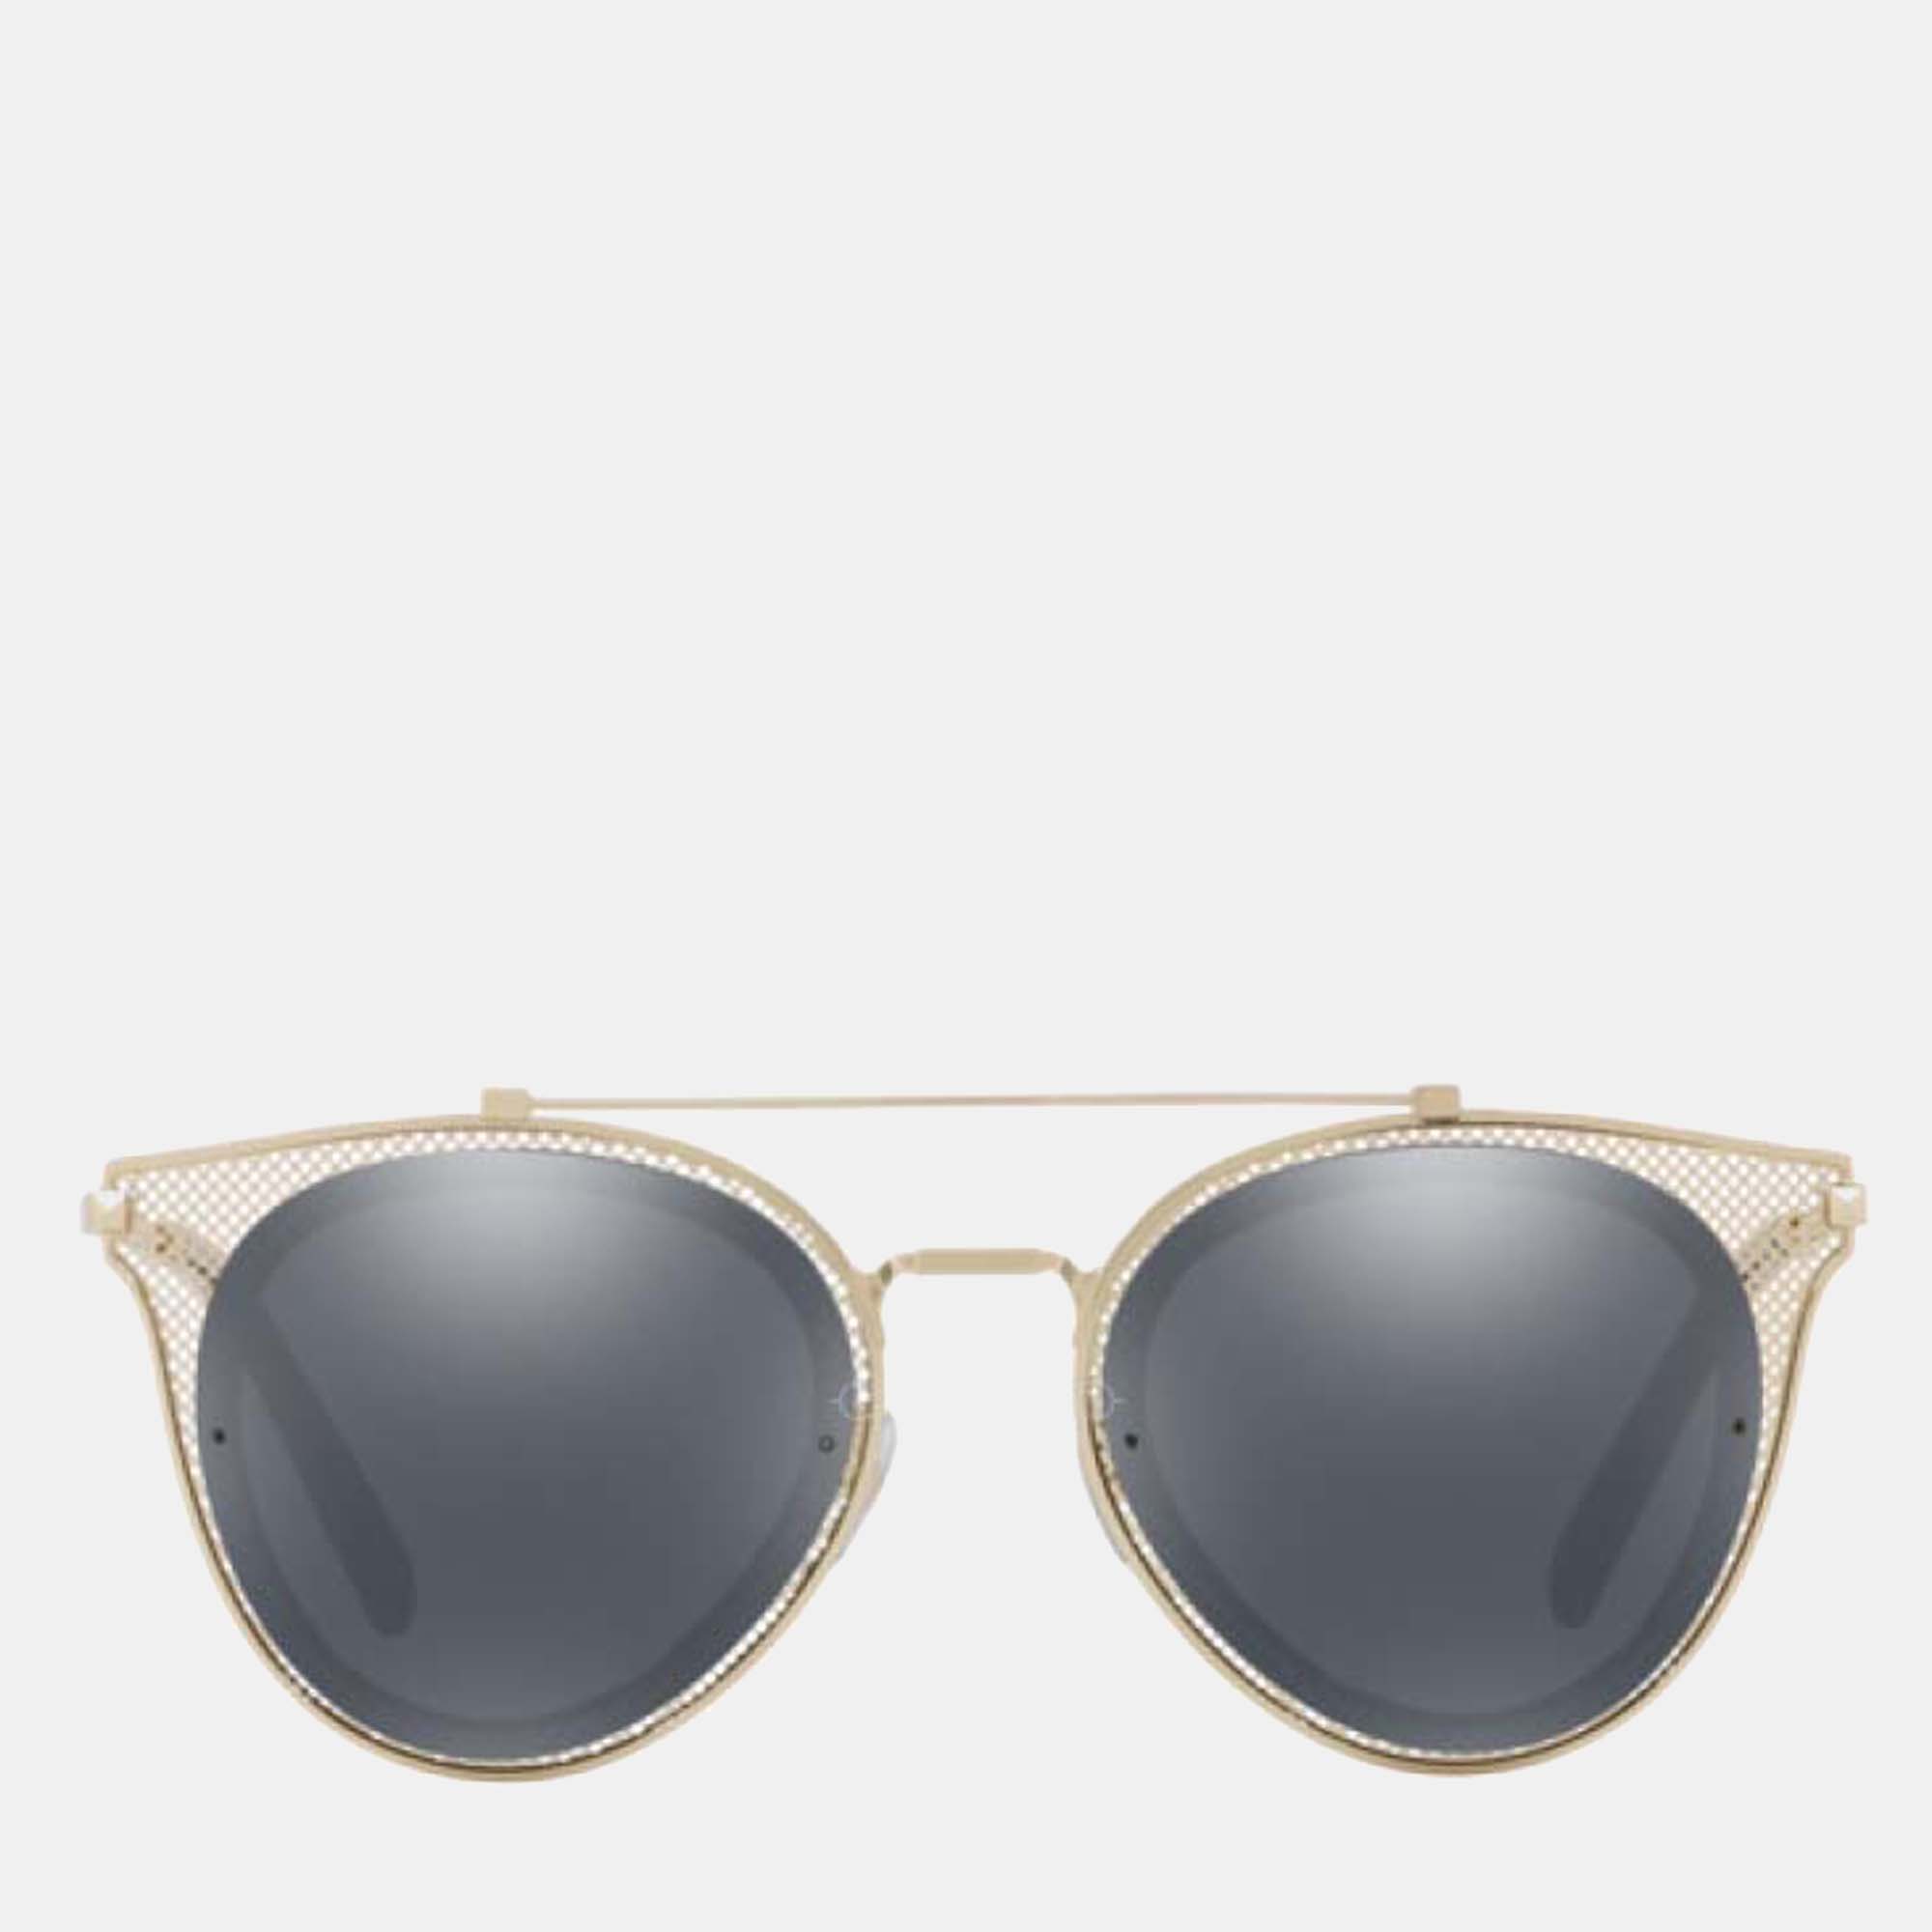 Valentino gold tone - va2019 - round-frame sunglasses